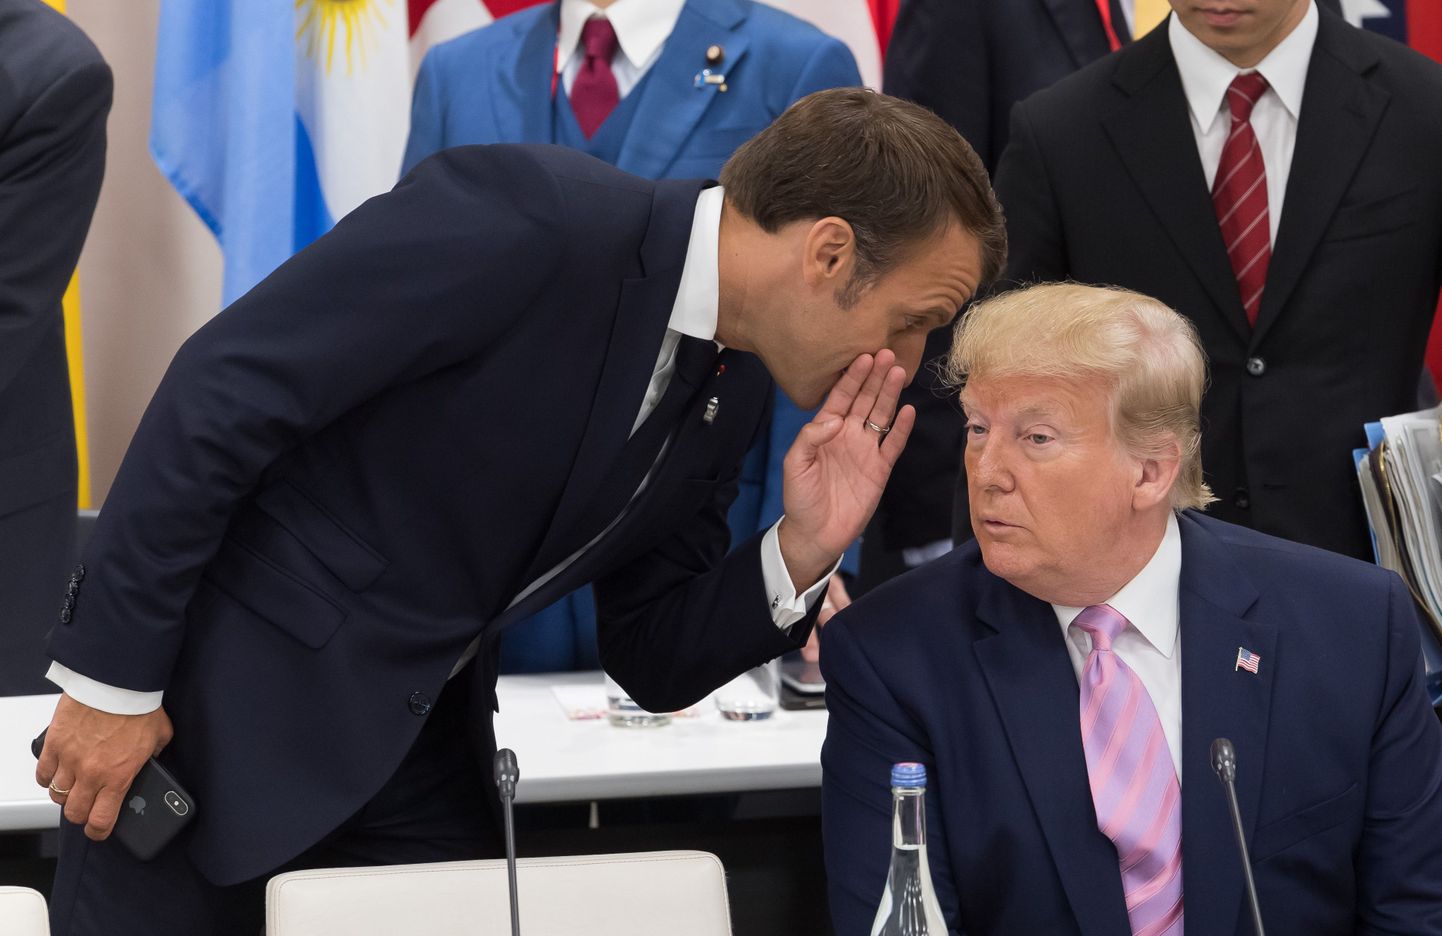 Prantsuse president Emmanuel Macron (vasakul) reedel Osakas G20 tippkohtumisel koos USA presidendi Donald Trumpiga.